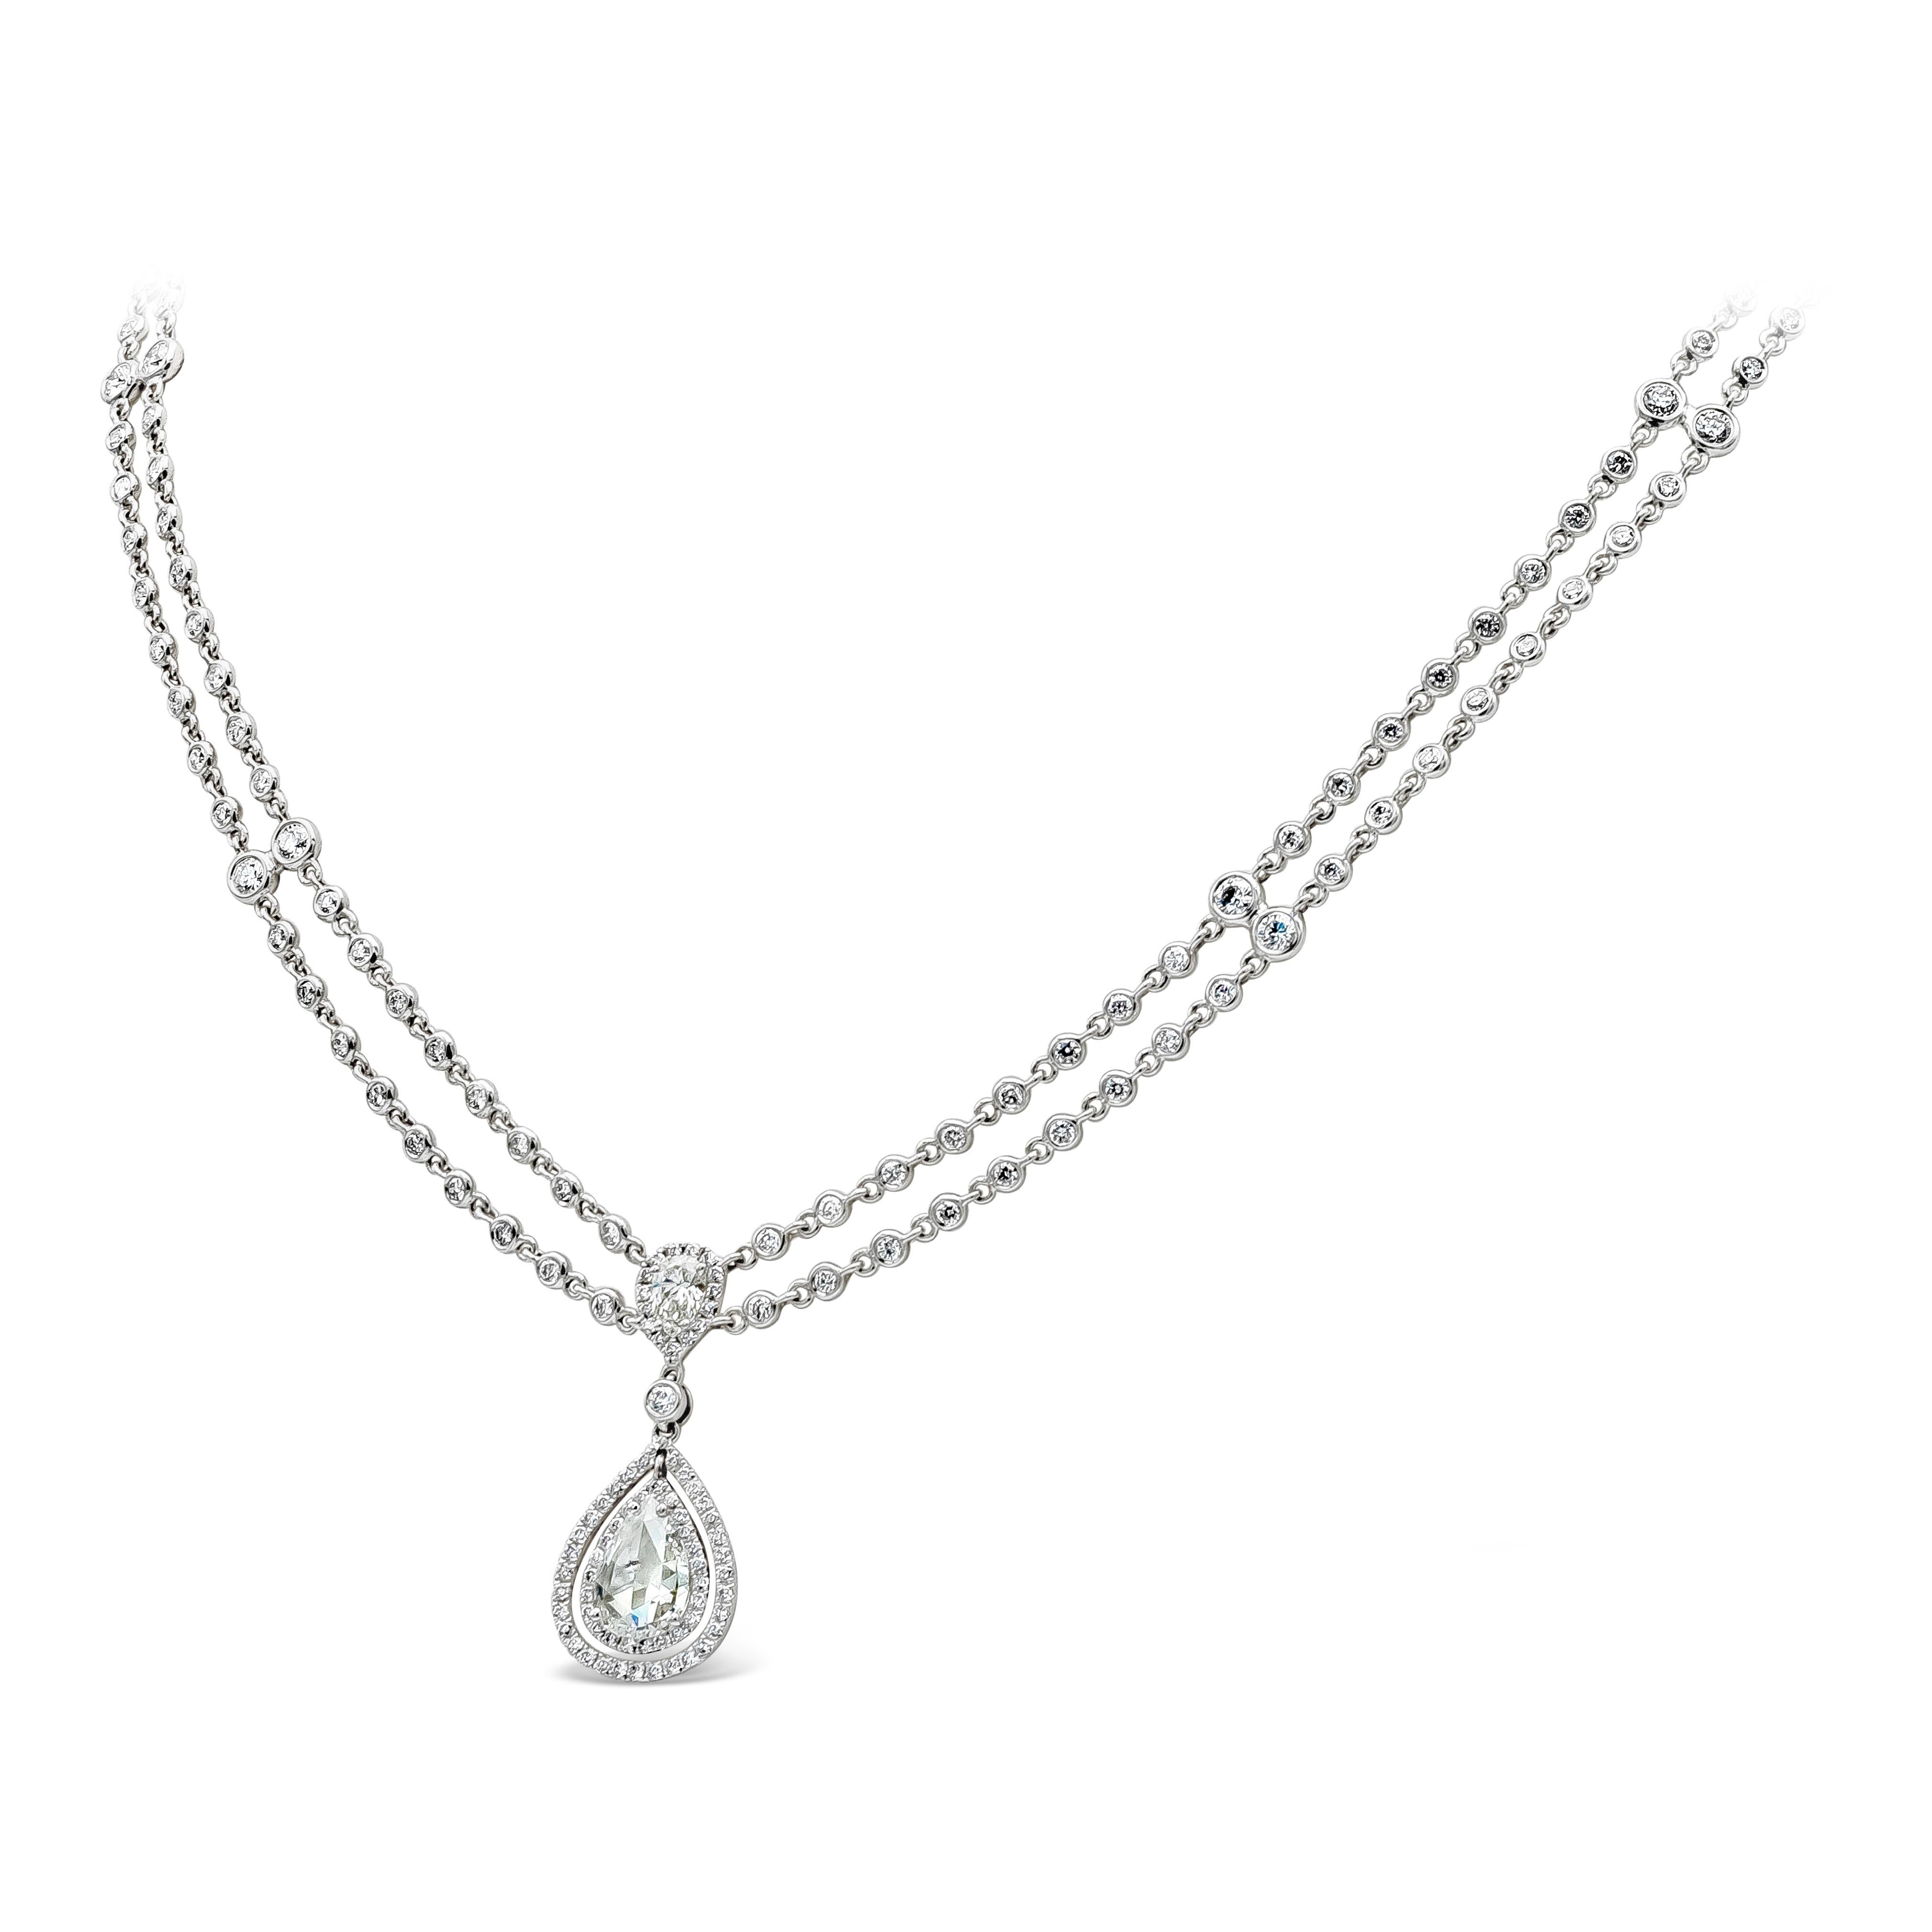 Un collier unique et magnifique mettant en valeur un diamant taillé en rose entouré de diamants ronds dans un halo, suspendu à deux diamants par la chaîne du mètre. Les diamants pèsent 4,62 carats au total. Fabriqué en or blanc 18K. 

Style